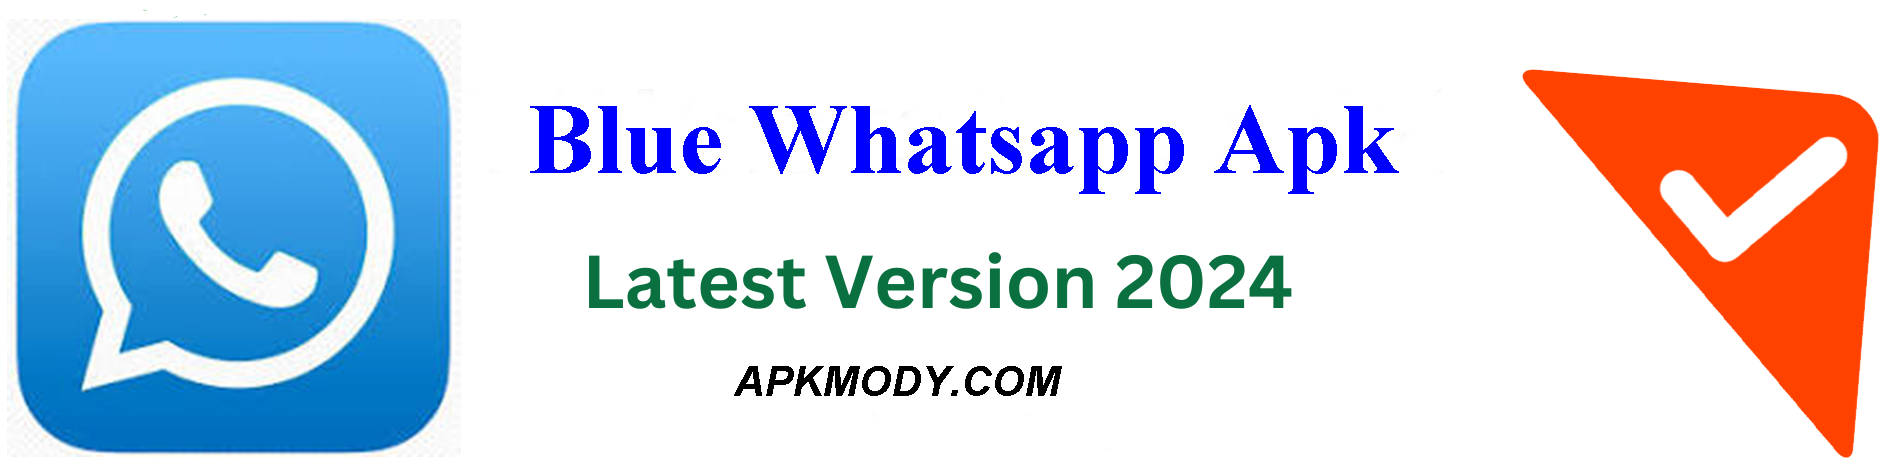 Blue Whatsapp apk